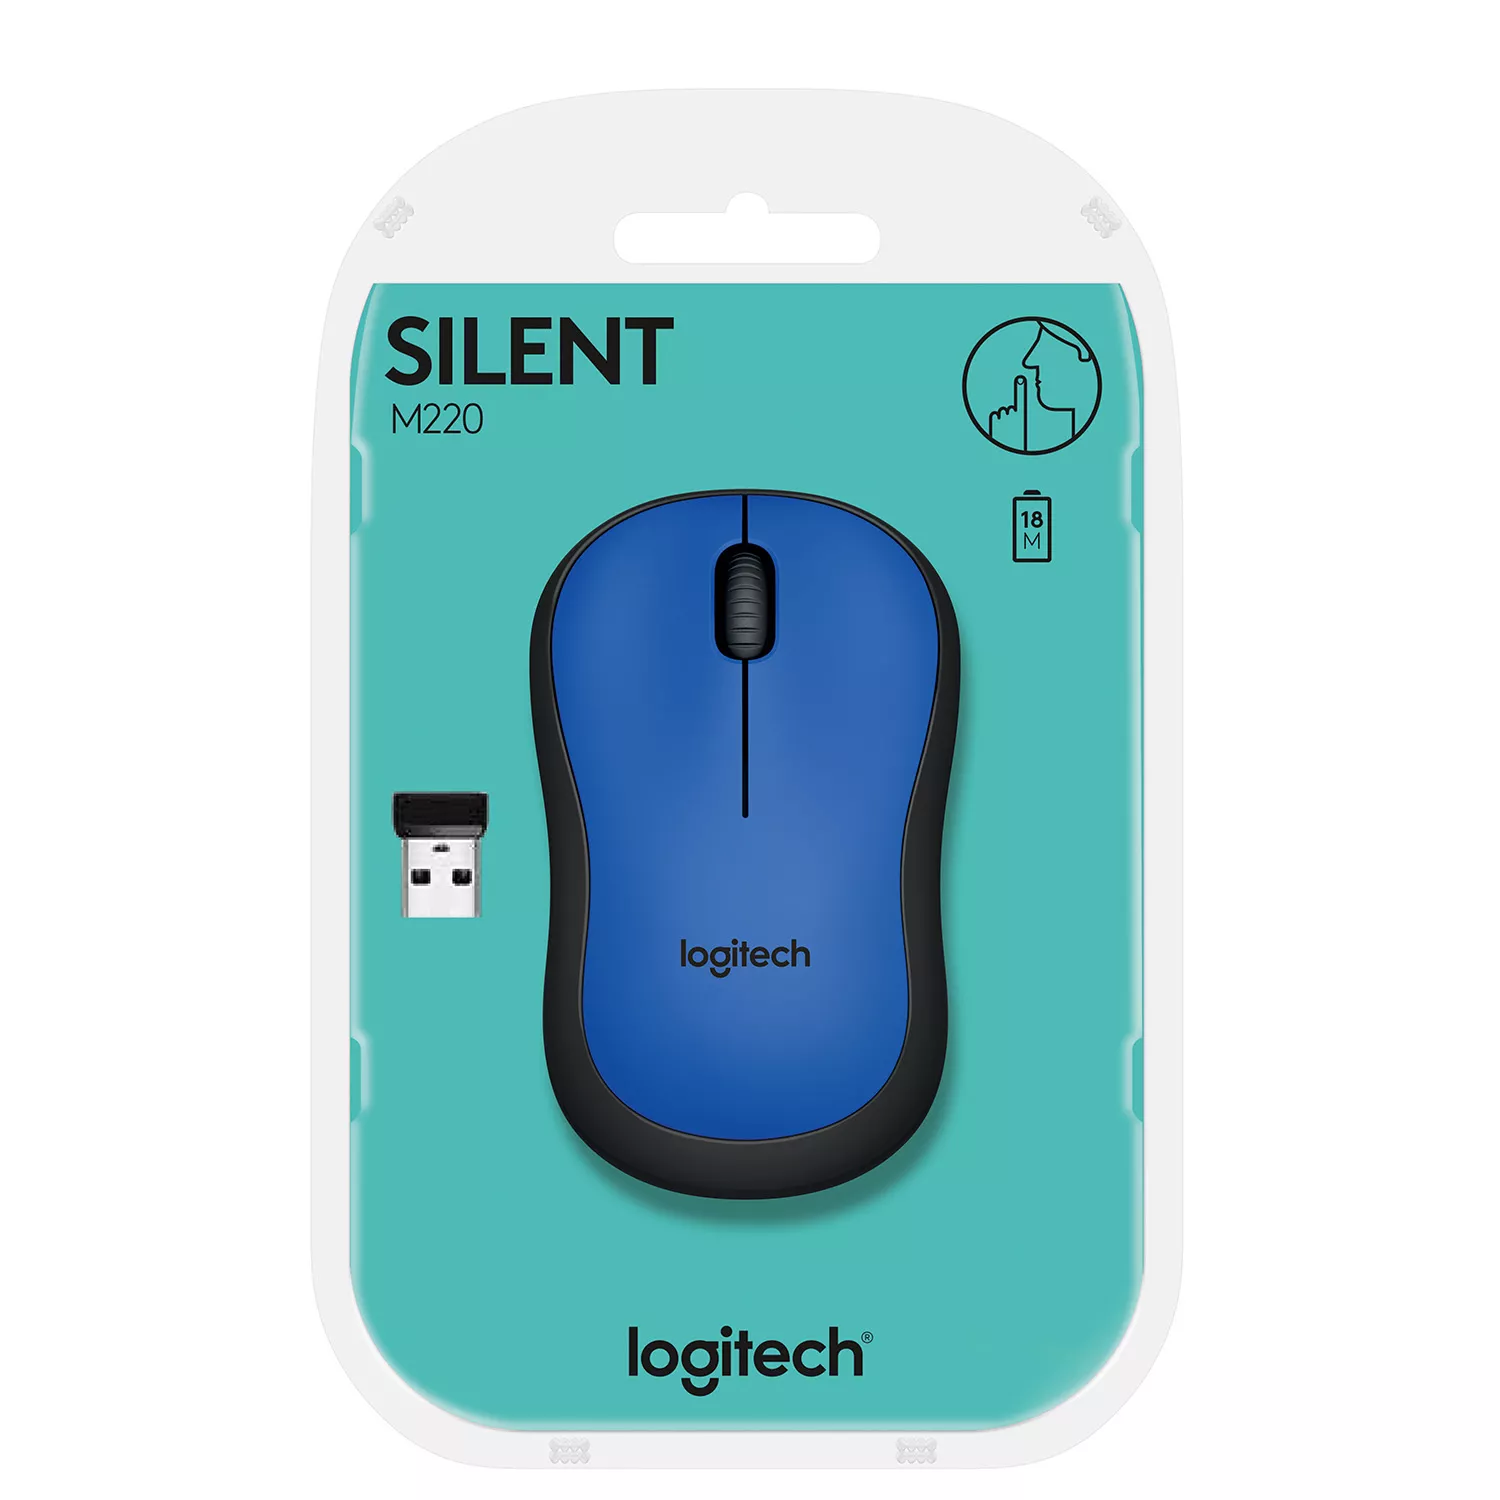 Vente Logitech M220 Silent Logitech au meilleur prix - visuel 8